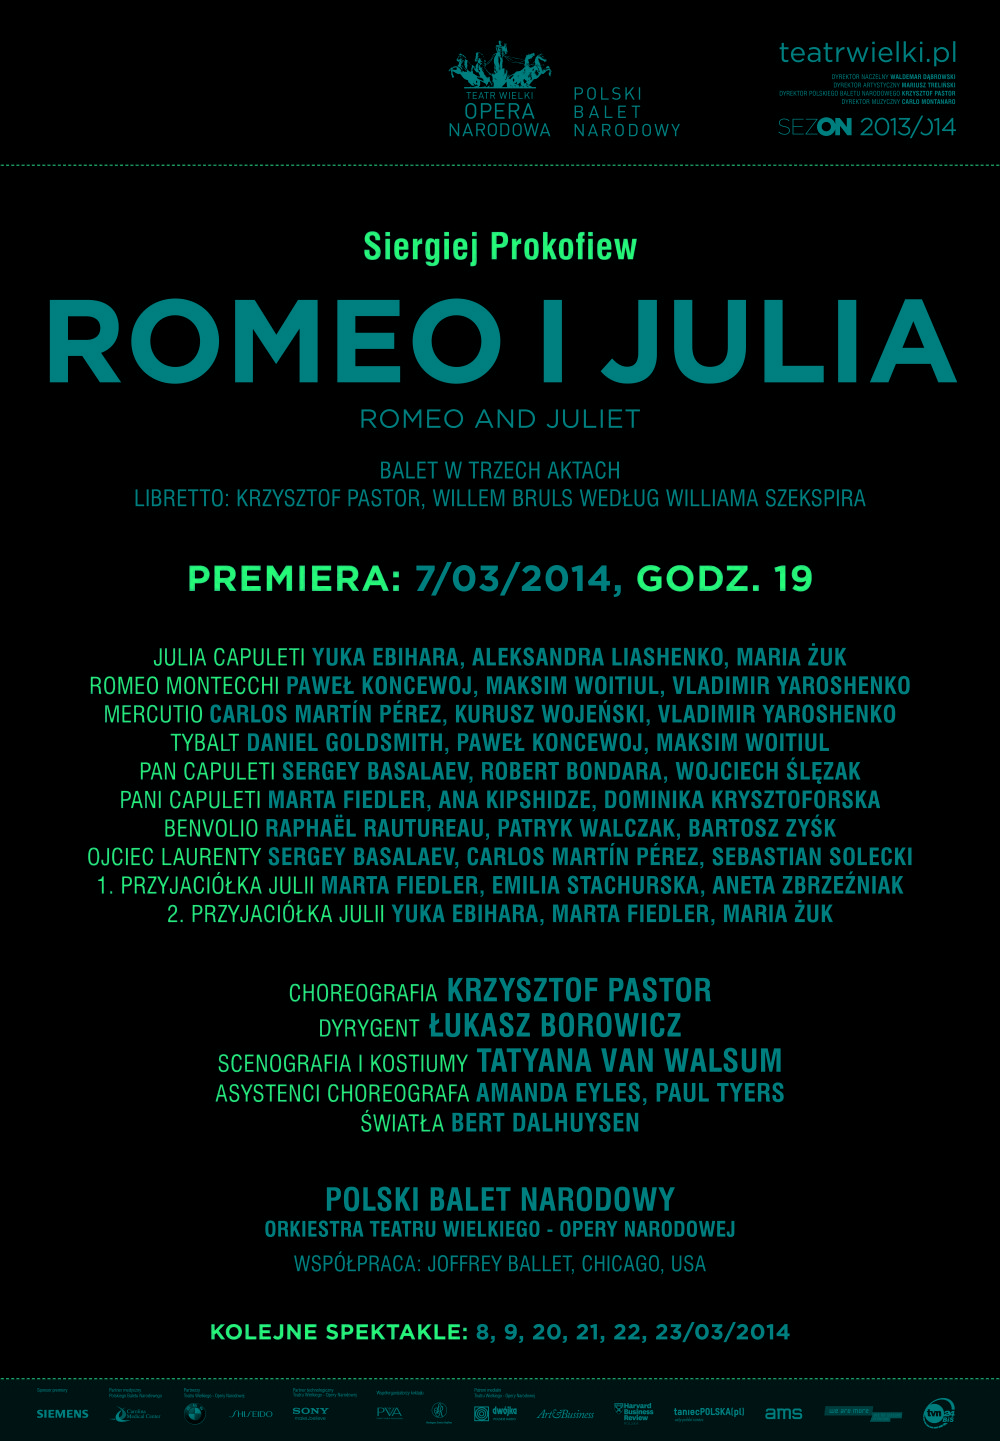 Afisz "Romeo i Julia" Siergiej Prokofiew / Krzysztof Pastor premiera 2014-03-07